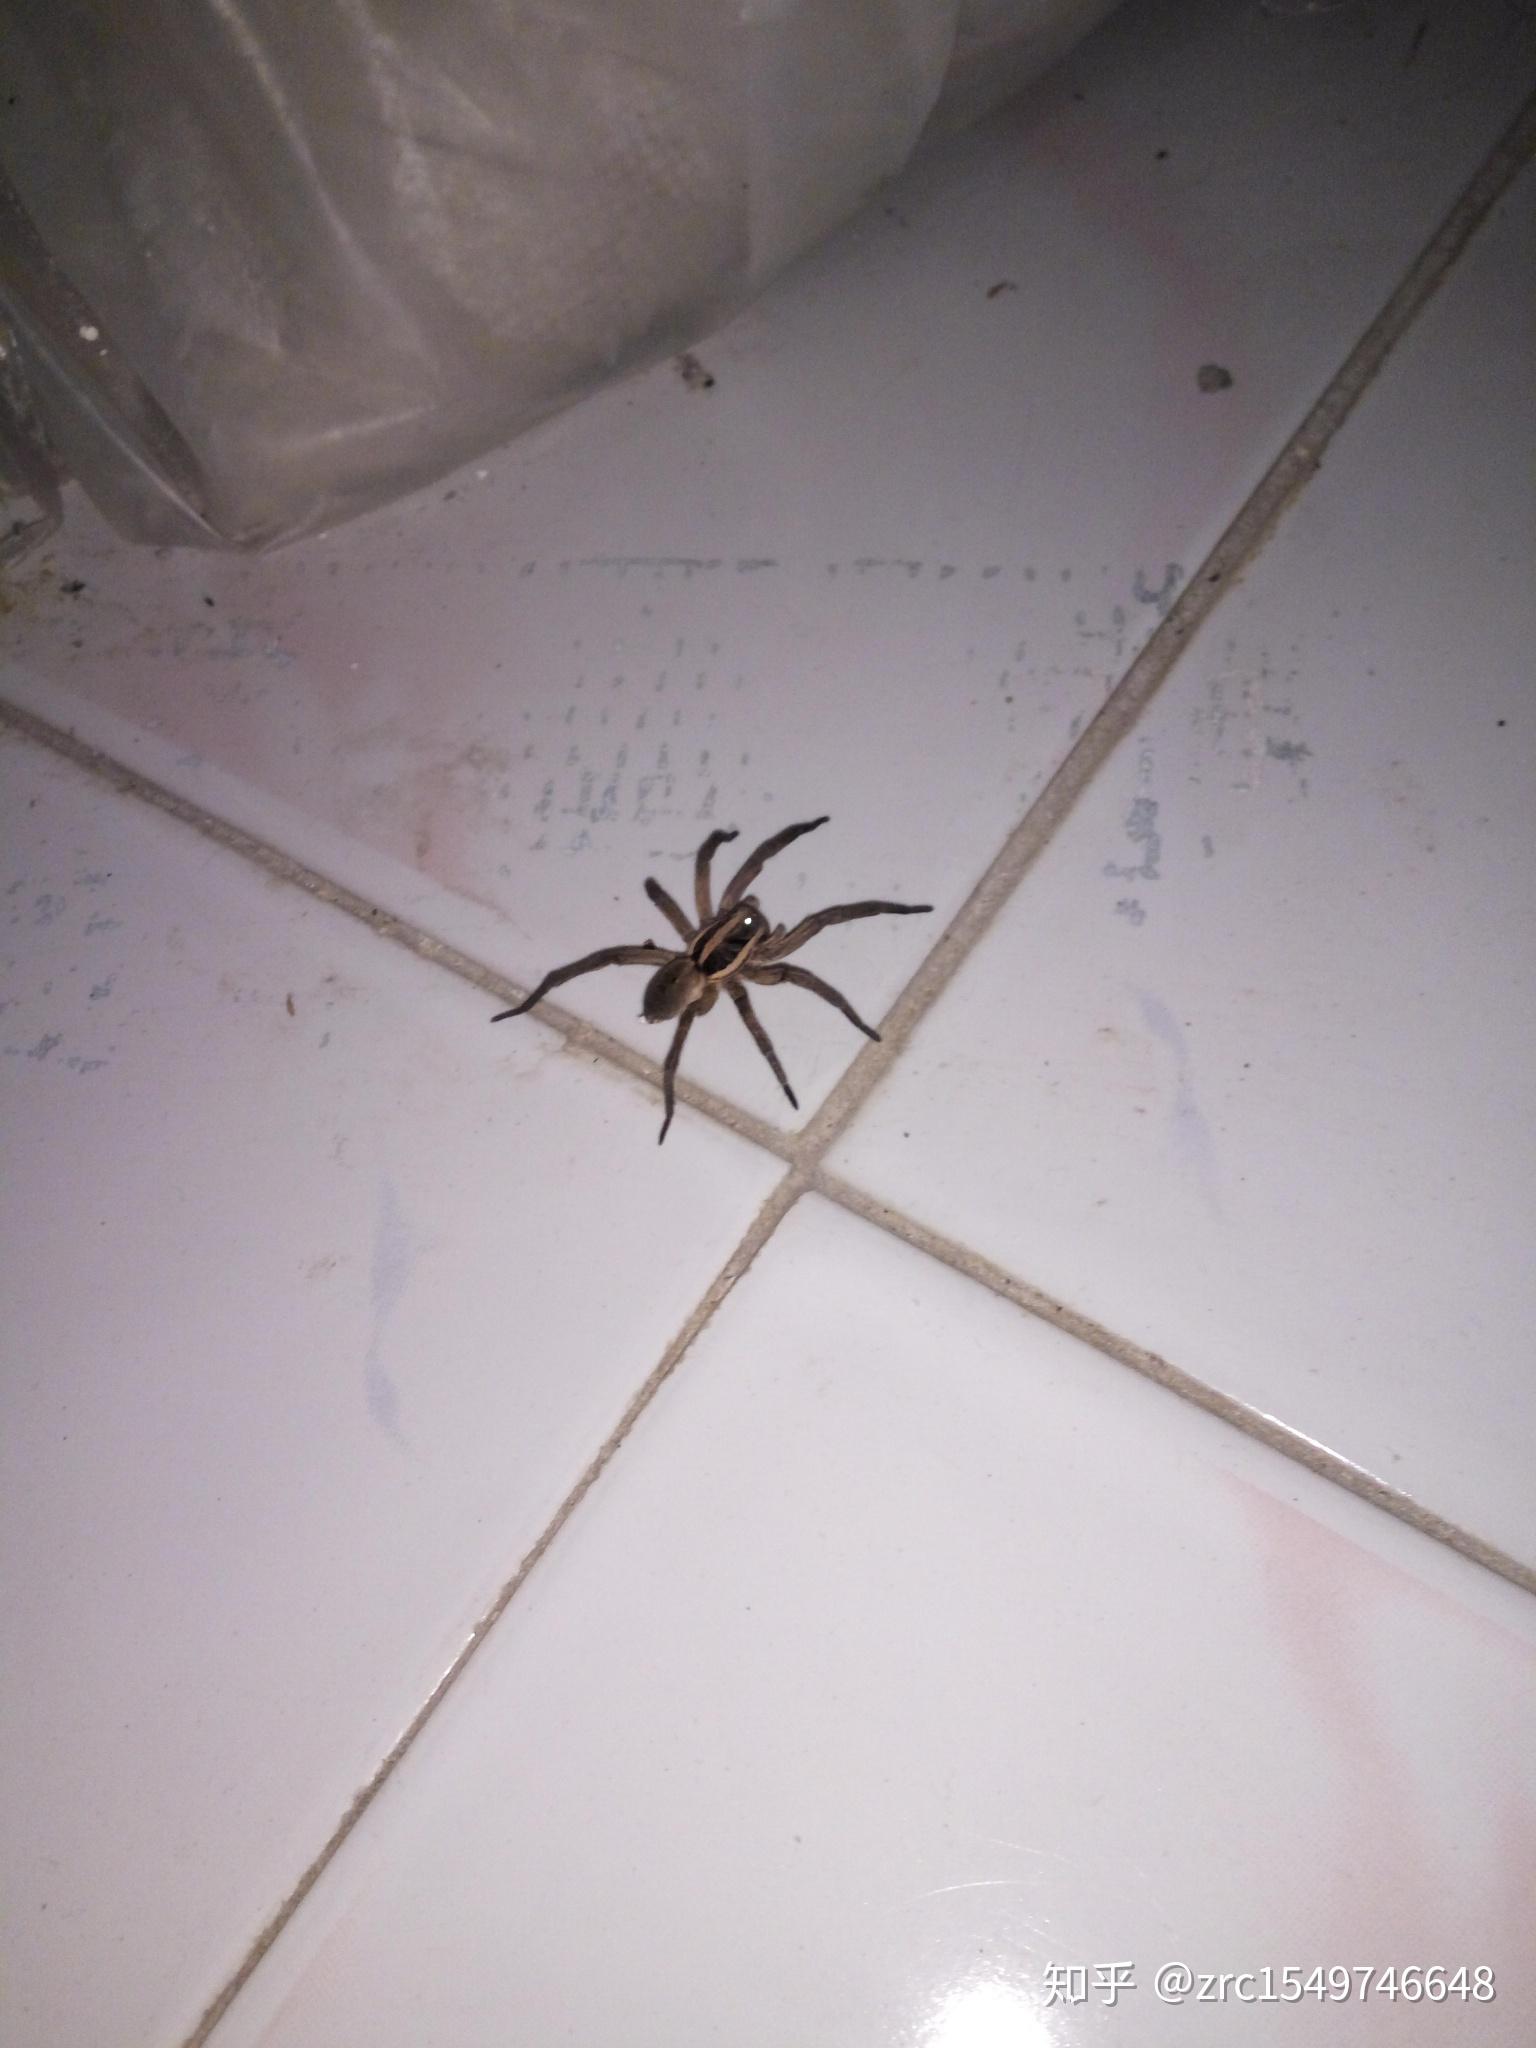 中国室内常见毒蜘蛛图片